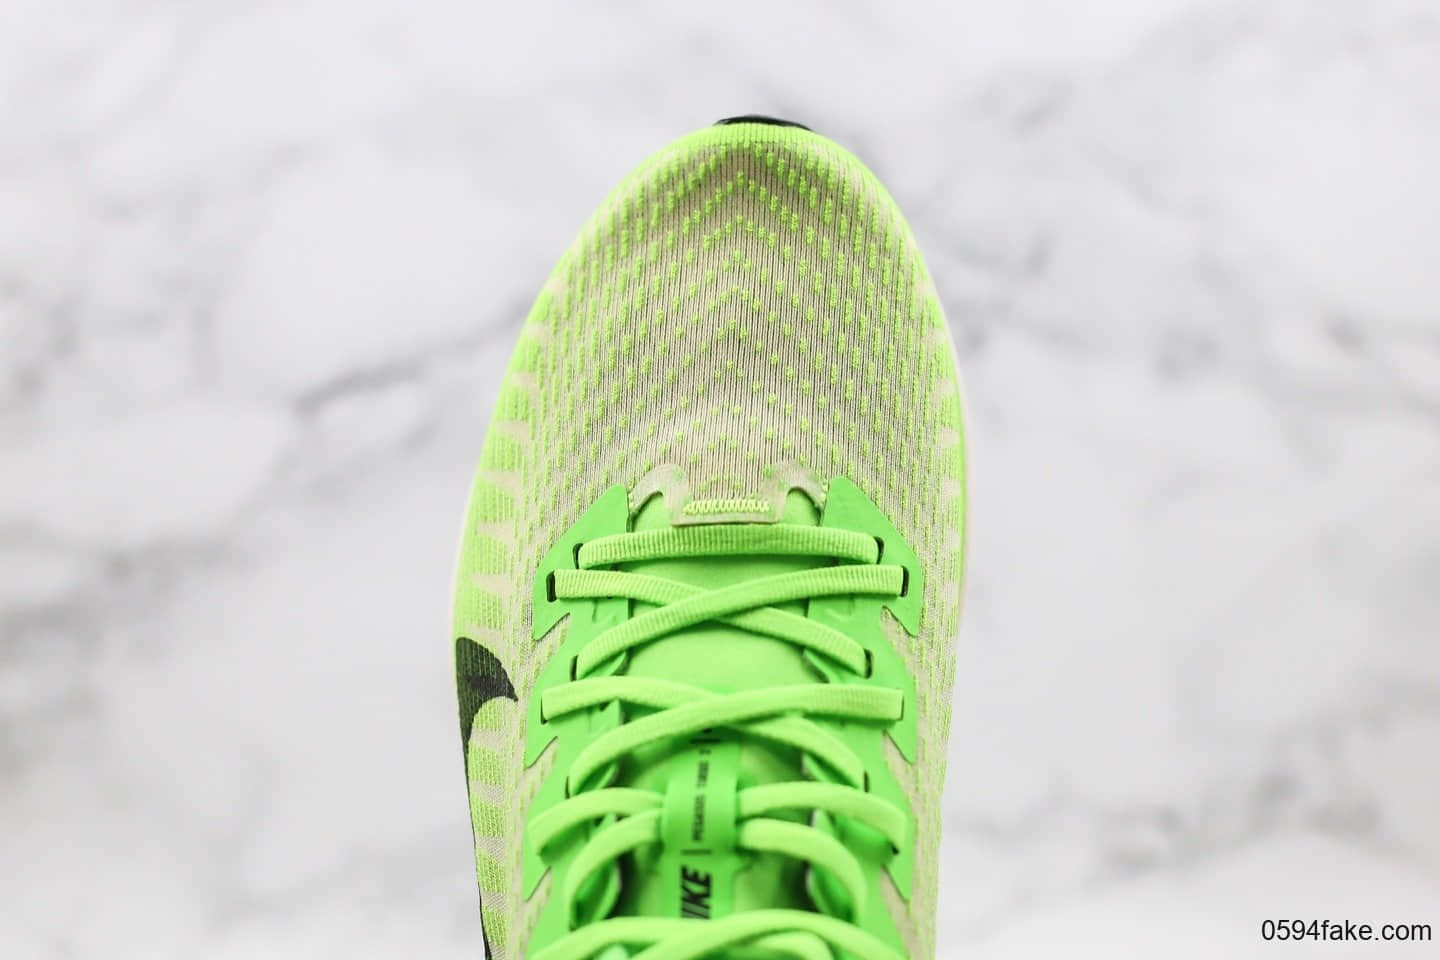 耐克Nike Air Zoom Pegasus 36纯原版本飞马36马拉松跑步鞋黑绿配色原材料拼接OEM代工厂标准原盒原标 货号：AT2863-300